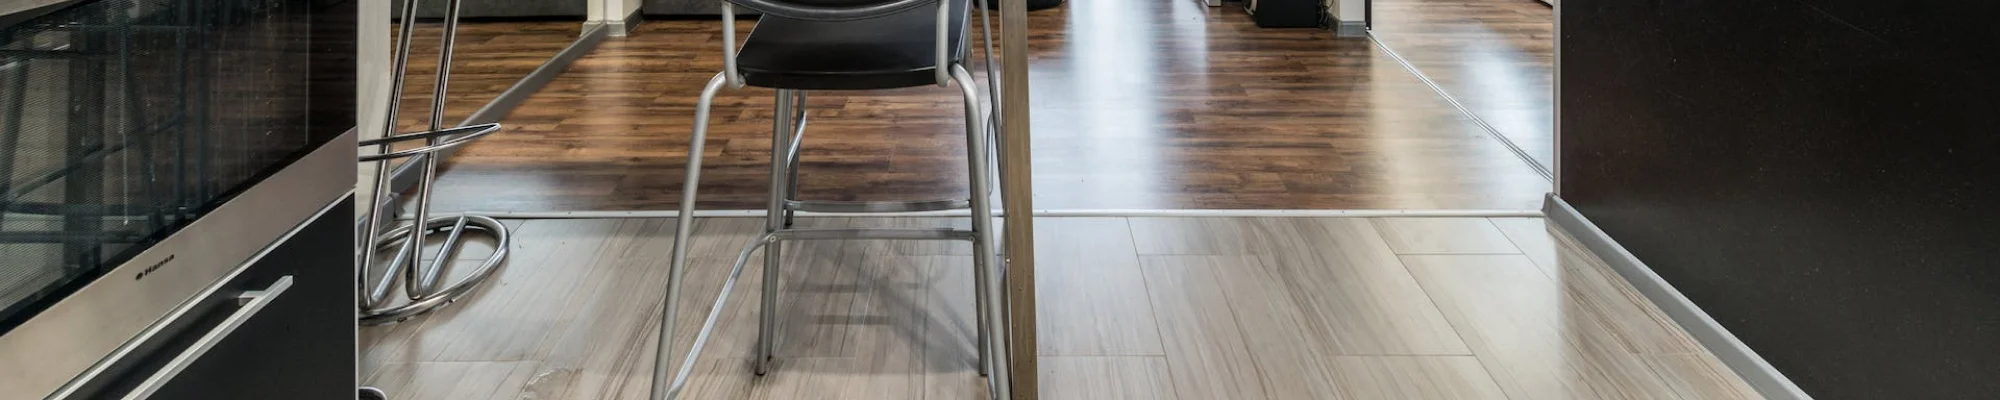 Vinyl floors installed in open concept kitchen